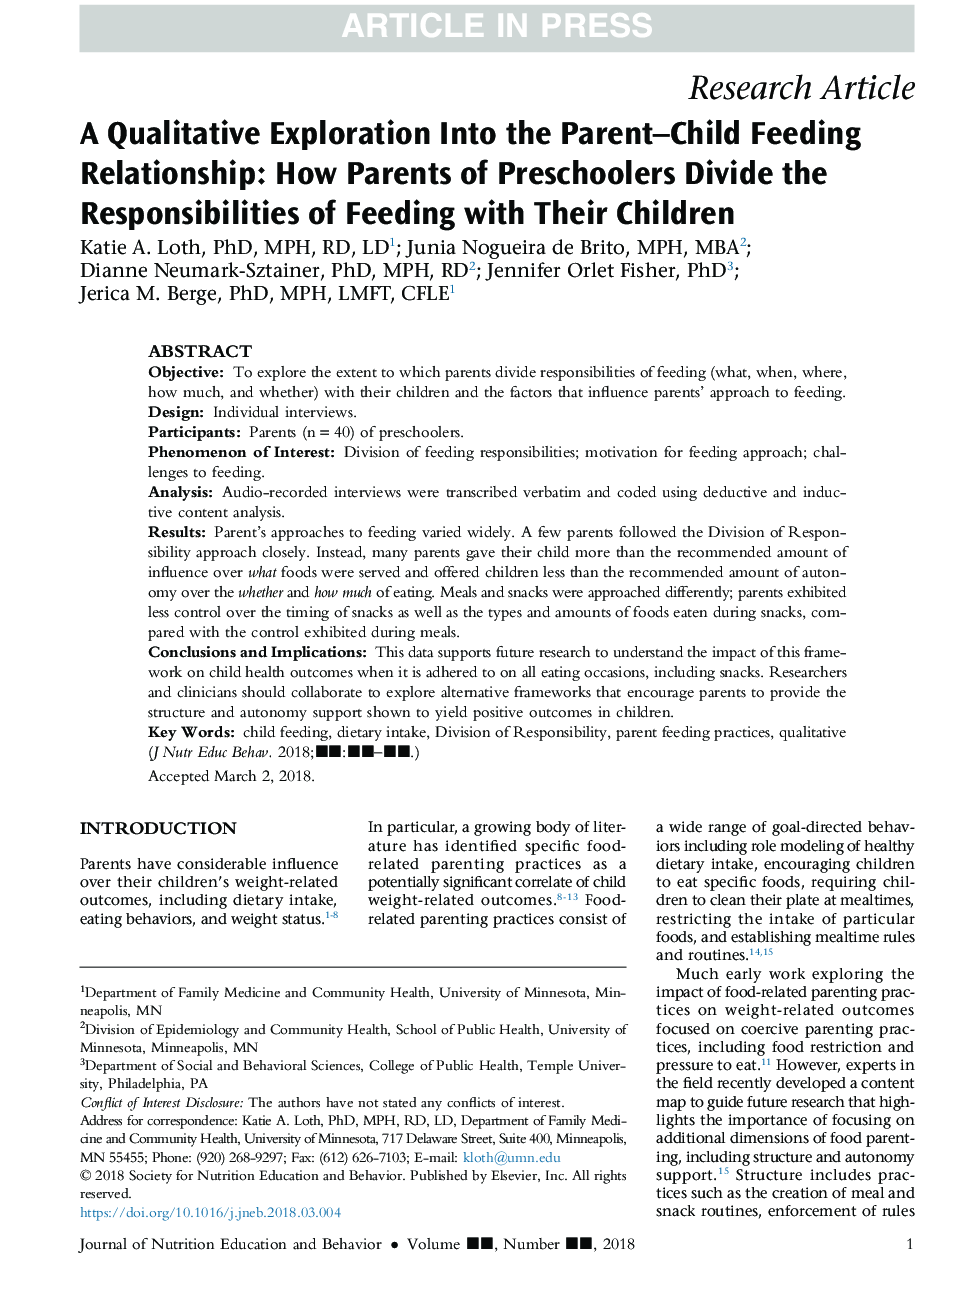 اکتشاف کیفی در رابطه با تغذیه والدین و کودک: چگونه والدین کودک پیش دبستانی با مسئولیت های تغذیه با کودکان خود را تقسیم می کنند